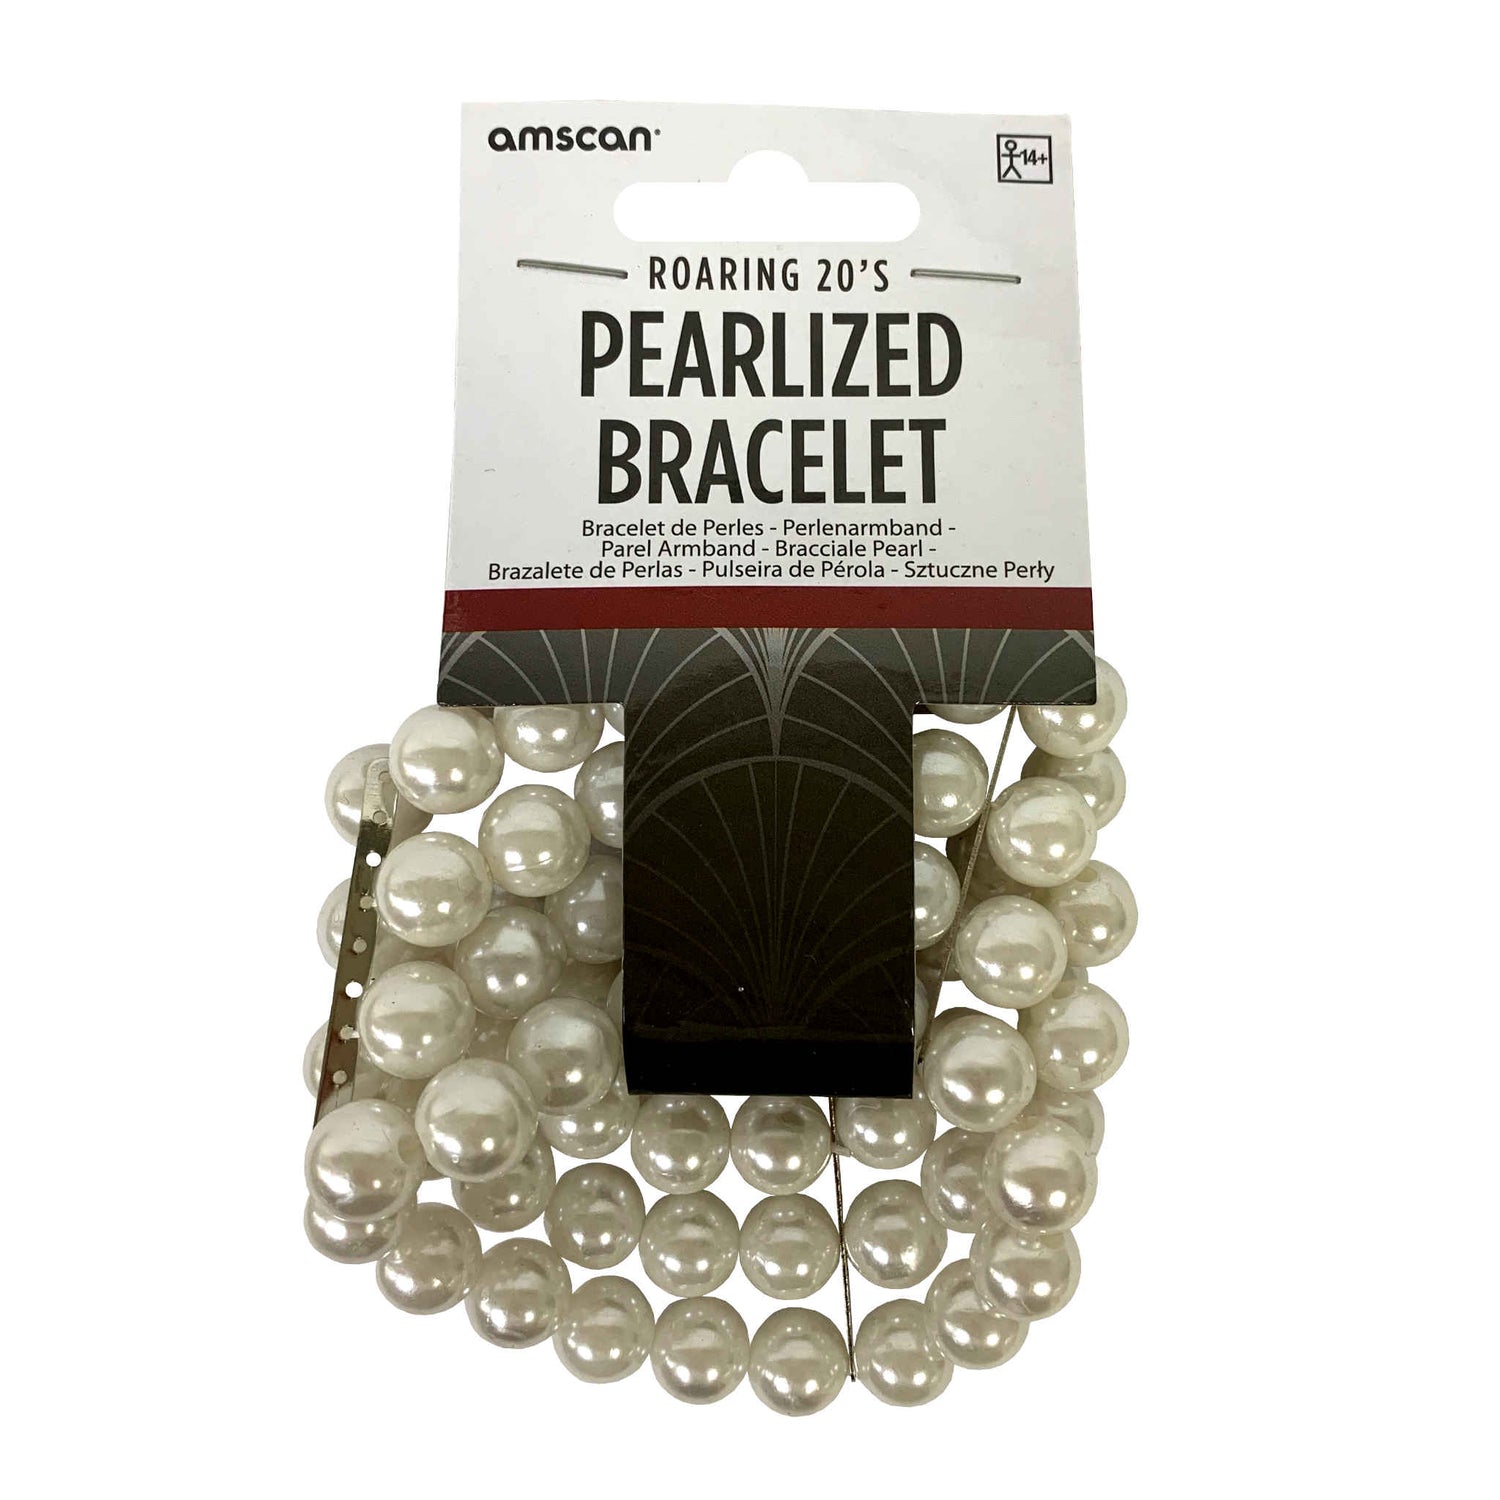 Roaring 20s Pearlized Bracelet